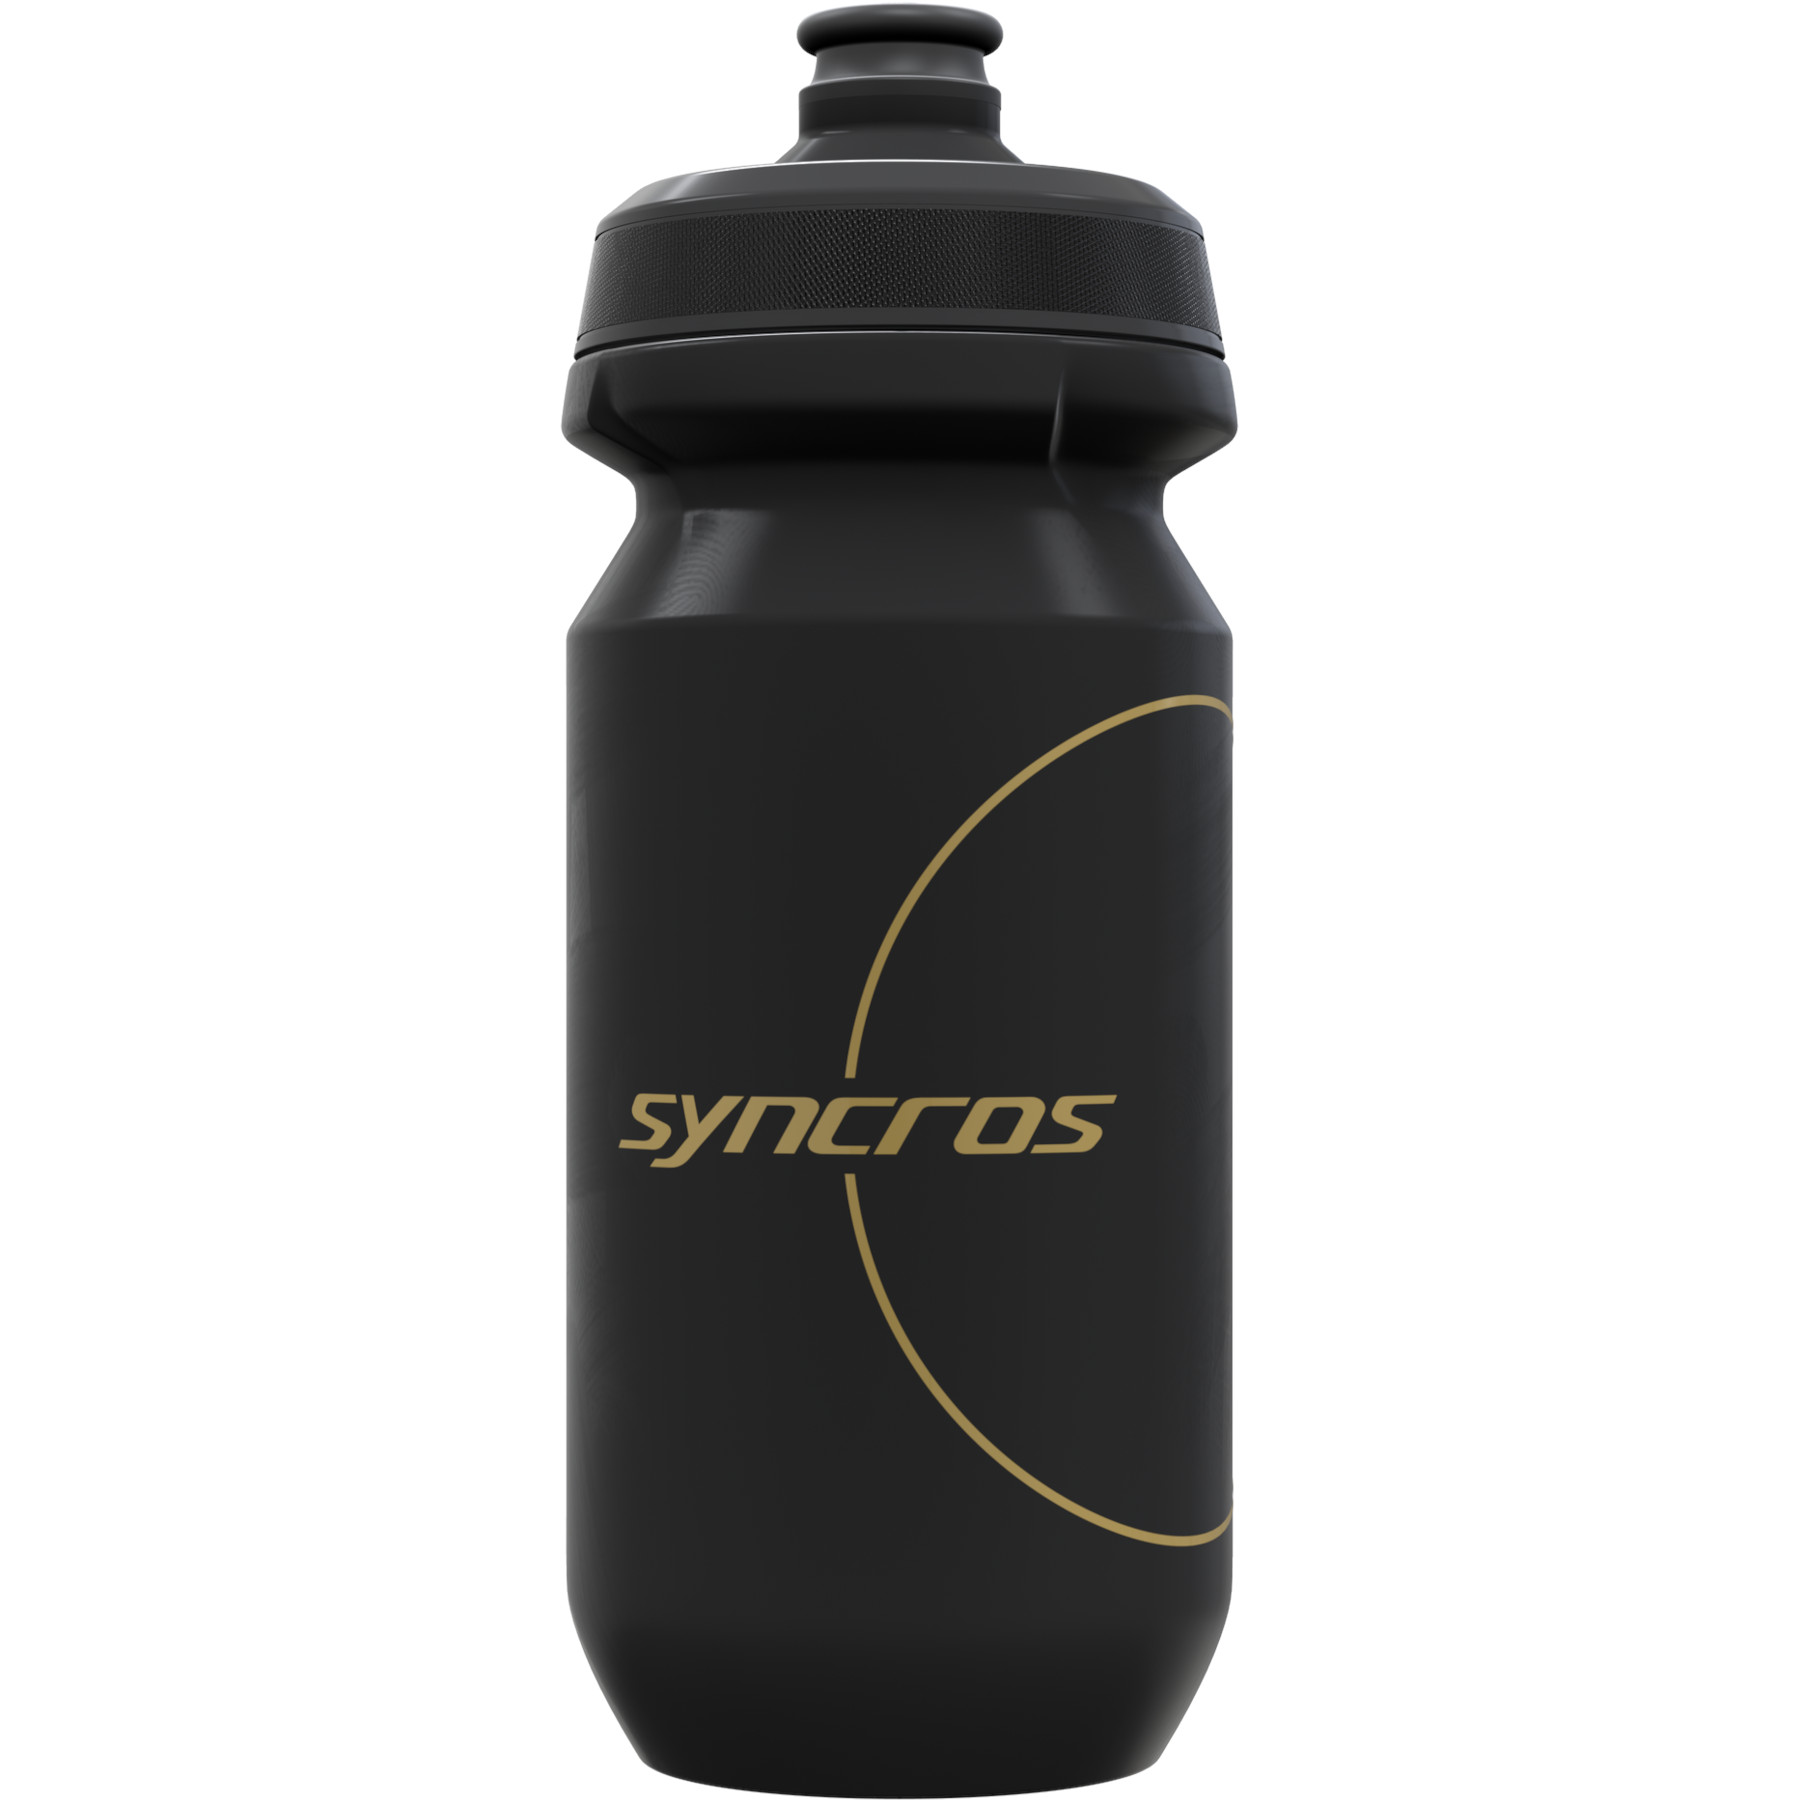 Produktbild von Syncros G5 Moon Wasserflasche - 800ml - schwarz/gold